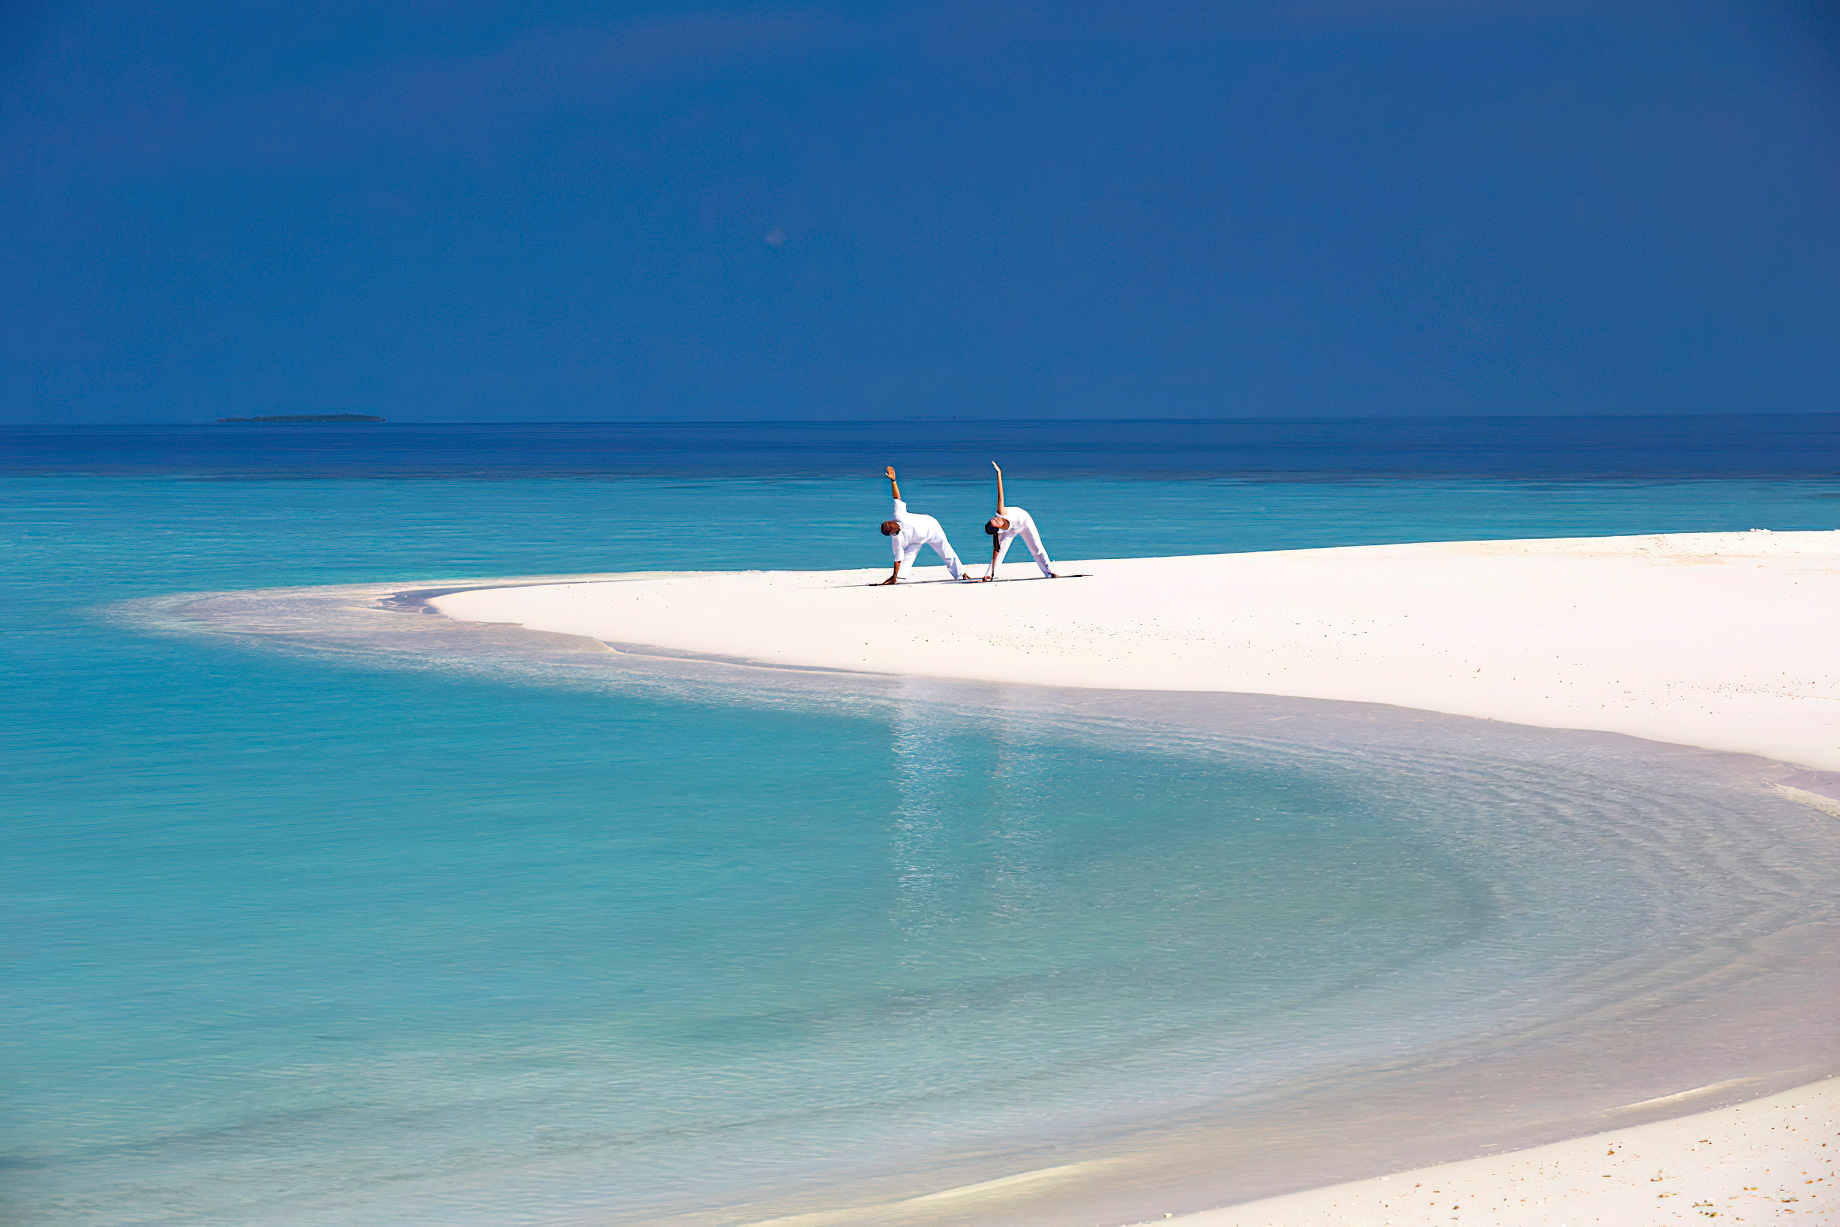 Anantara Kihavah Maldives Villas Resort – Baa Atoll, Maldives – Sand Bank Yoga